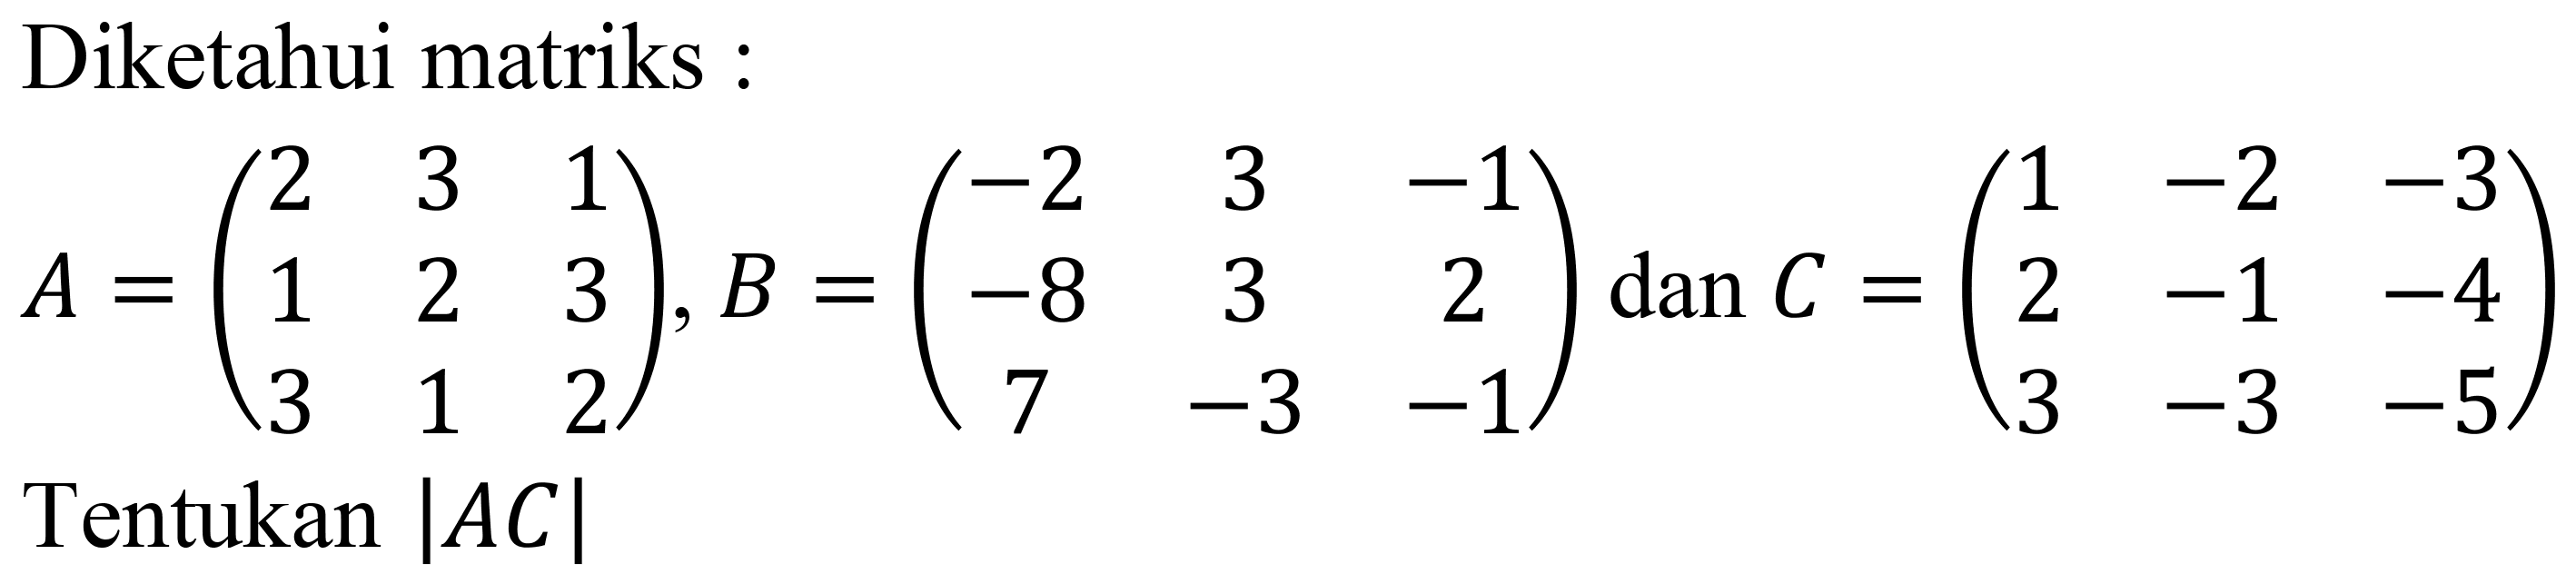 Diketahui matriks :

A=(
2  3  1 
1  2  3 
3  1  2
), B=(
-2  3  -1 
-8  3  2 
7  -3  -1
) dan C=(
1  -2  -3 
2  -1  -4 
3  -3  -5
)
